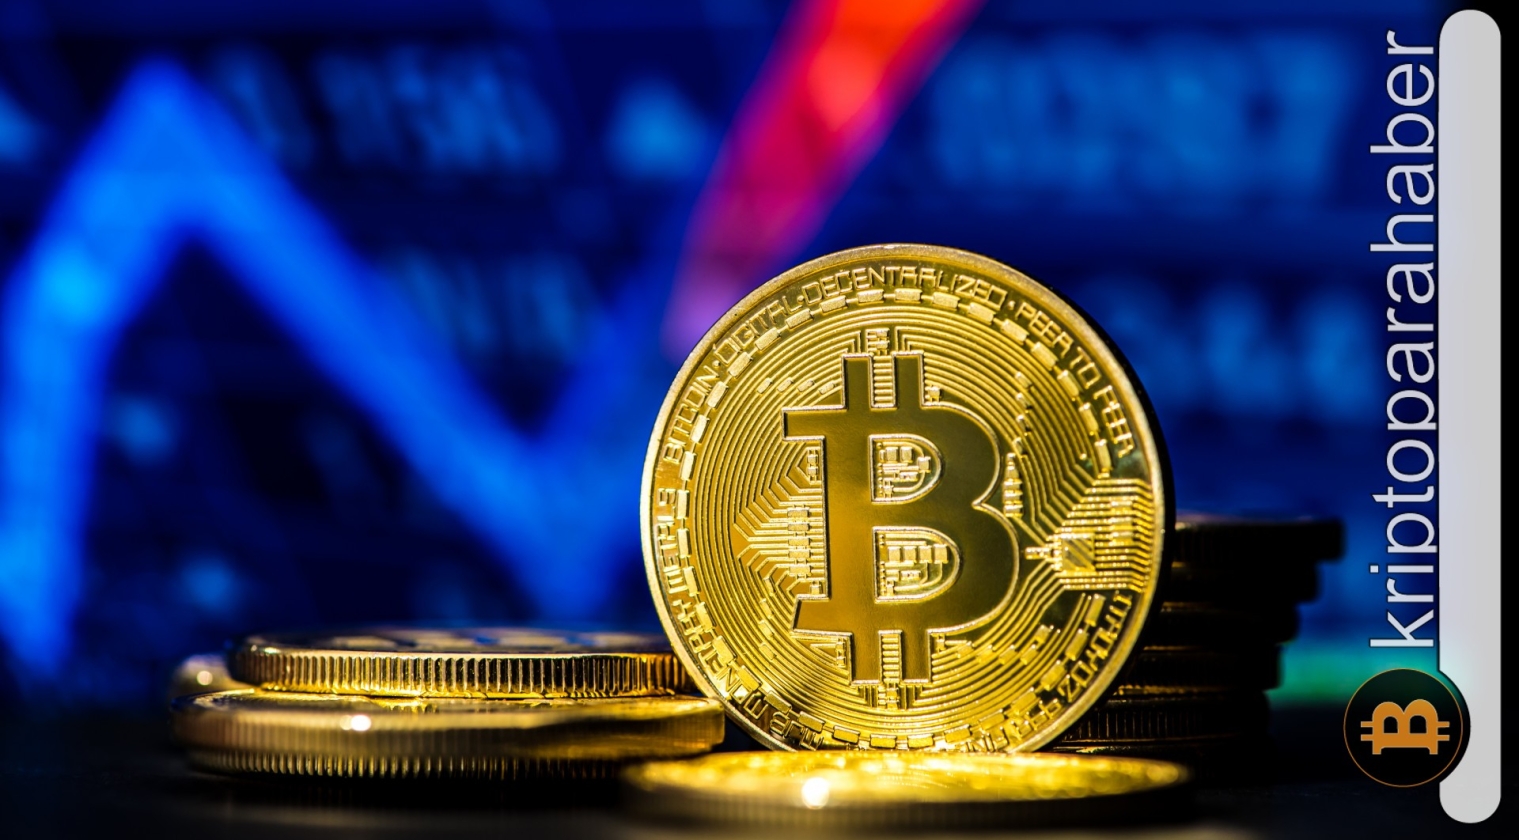 Bitcoin fiyat hareketi ve öne çıkan kripto para gelişmeleri